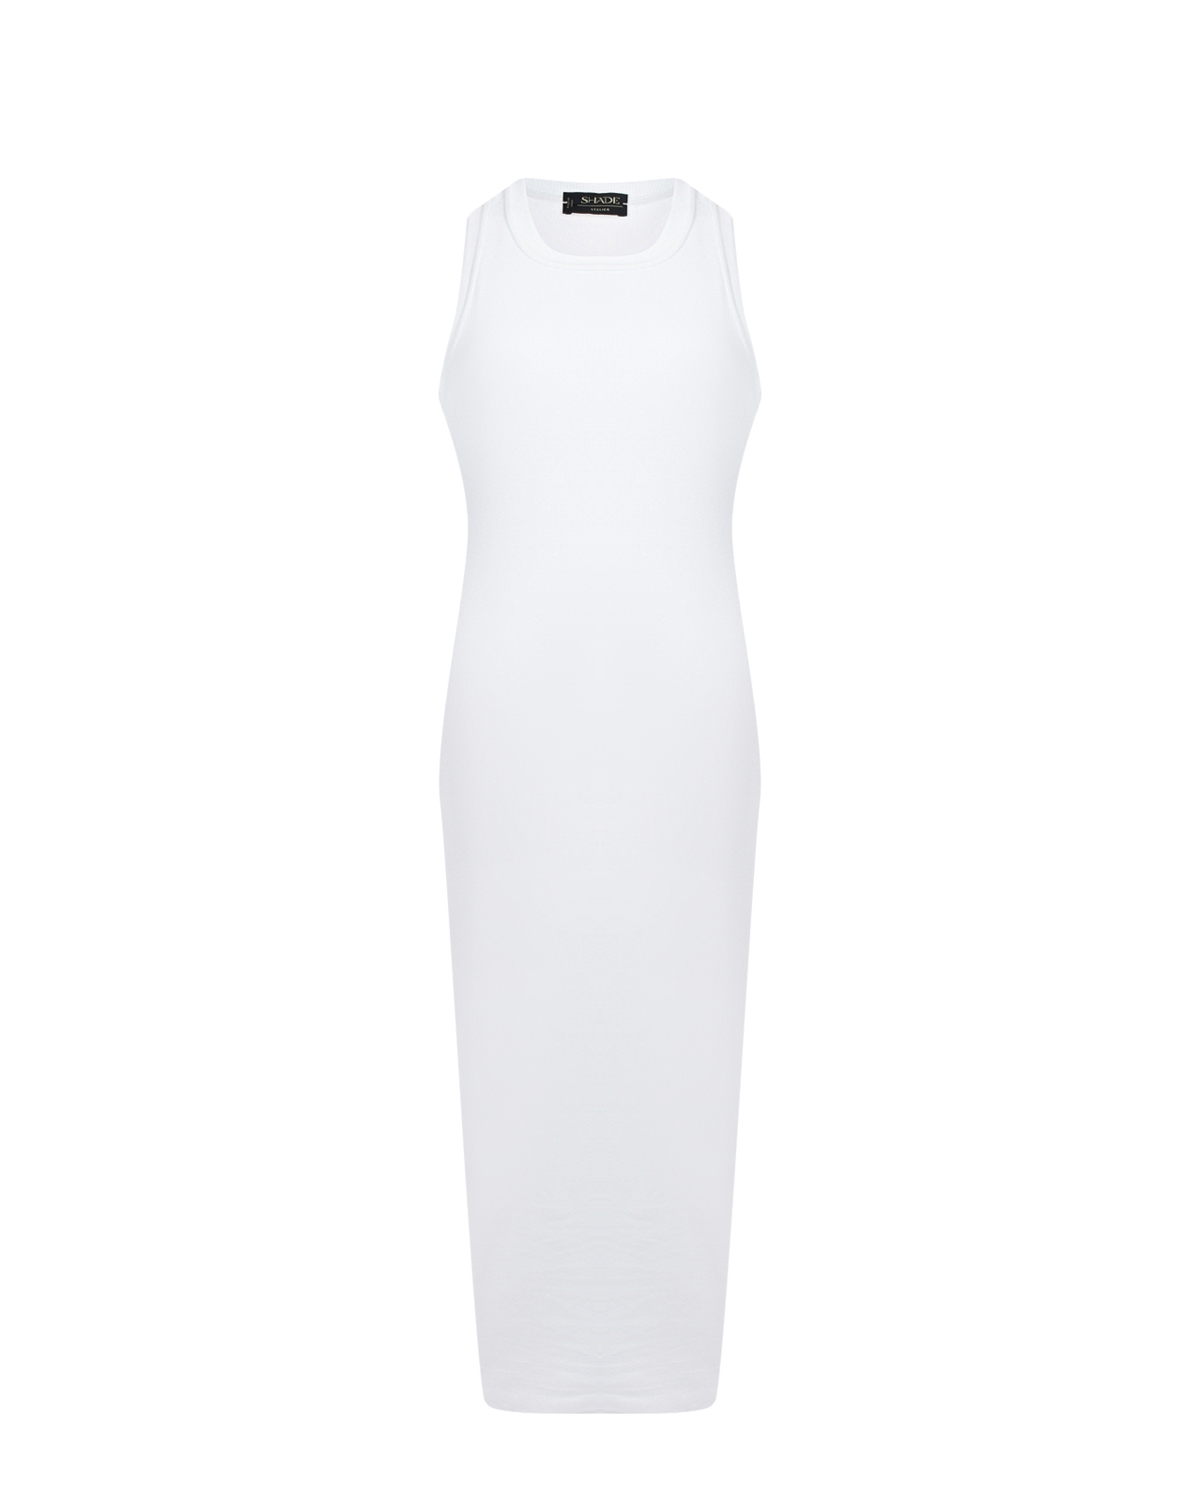 Белое платье-майка из хлопка SHADE платье для животных клубничка xl дс 40 ог 50 см белое